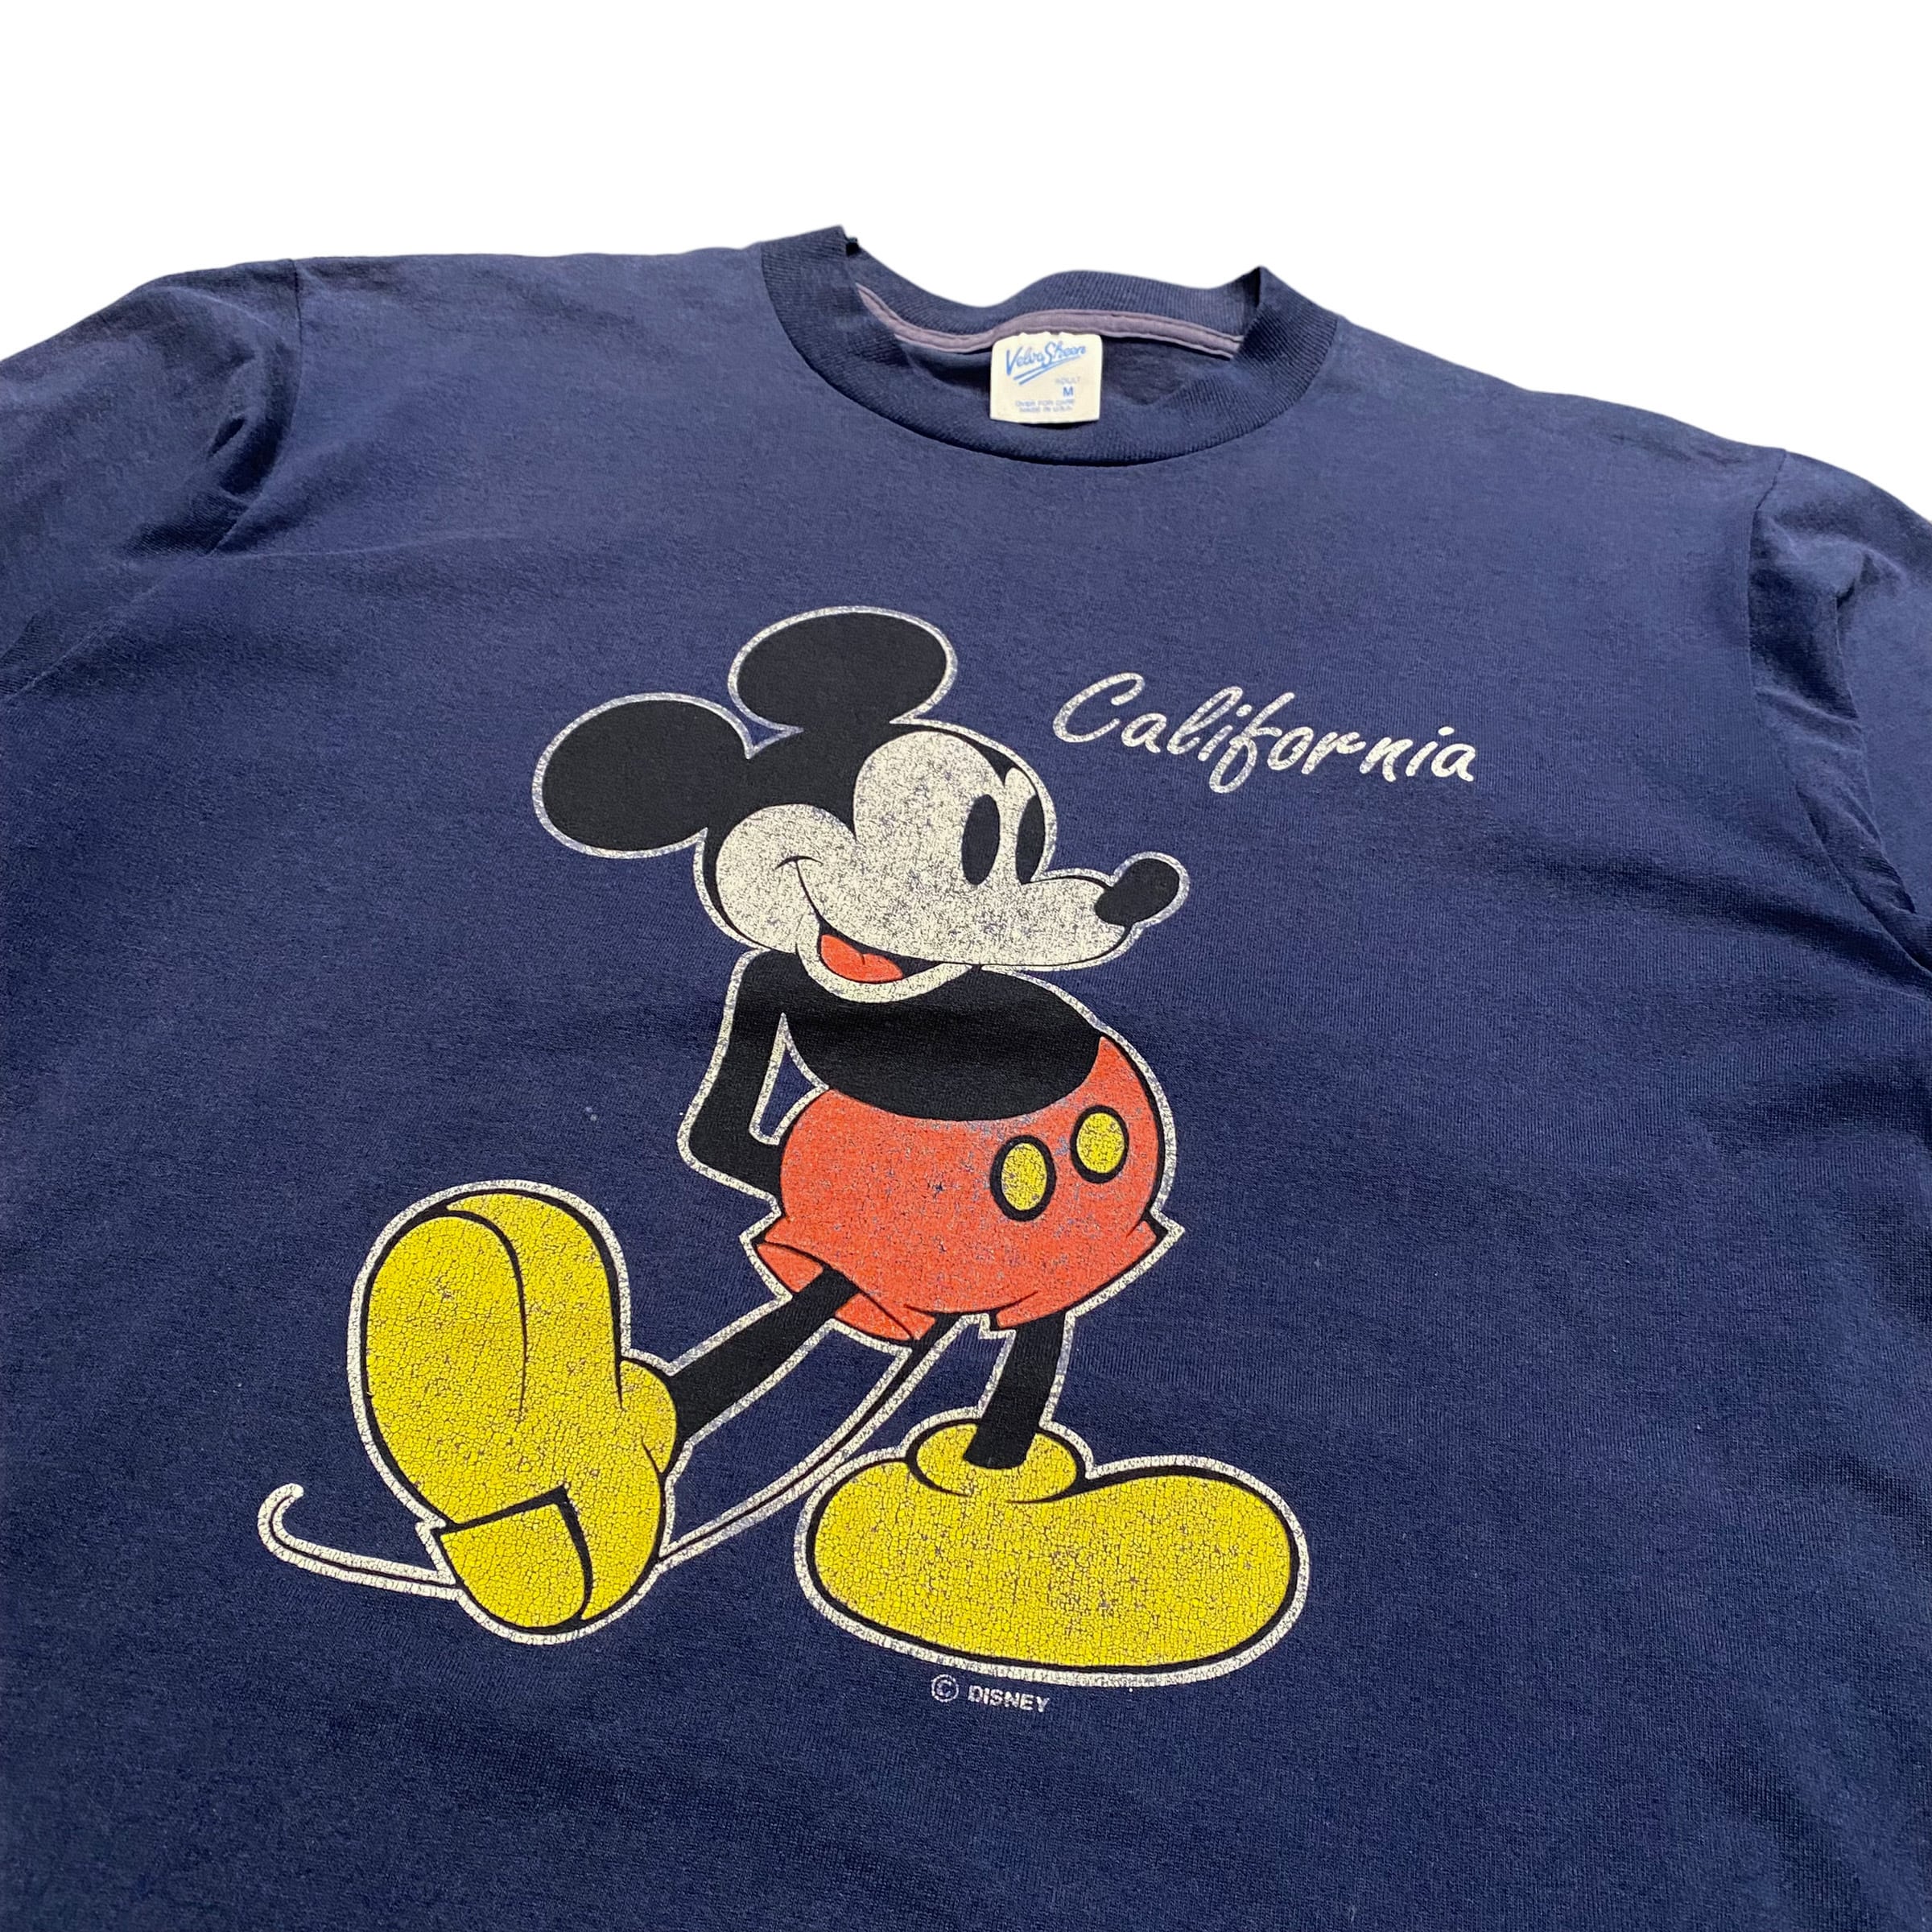 90年代 MIicky&co MICKEY MOUSE ミッキーマウス キャラクター刺繍Tシャツ USA製 メンズL ヴィンテージ /eaa266532